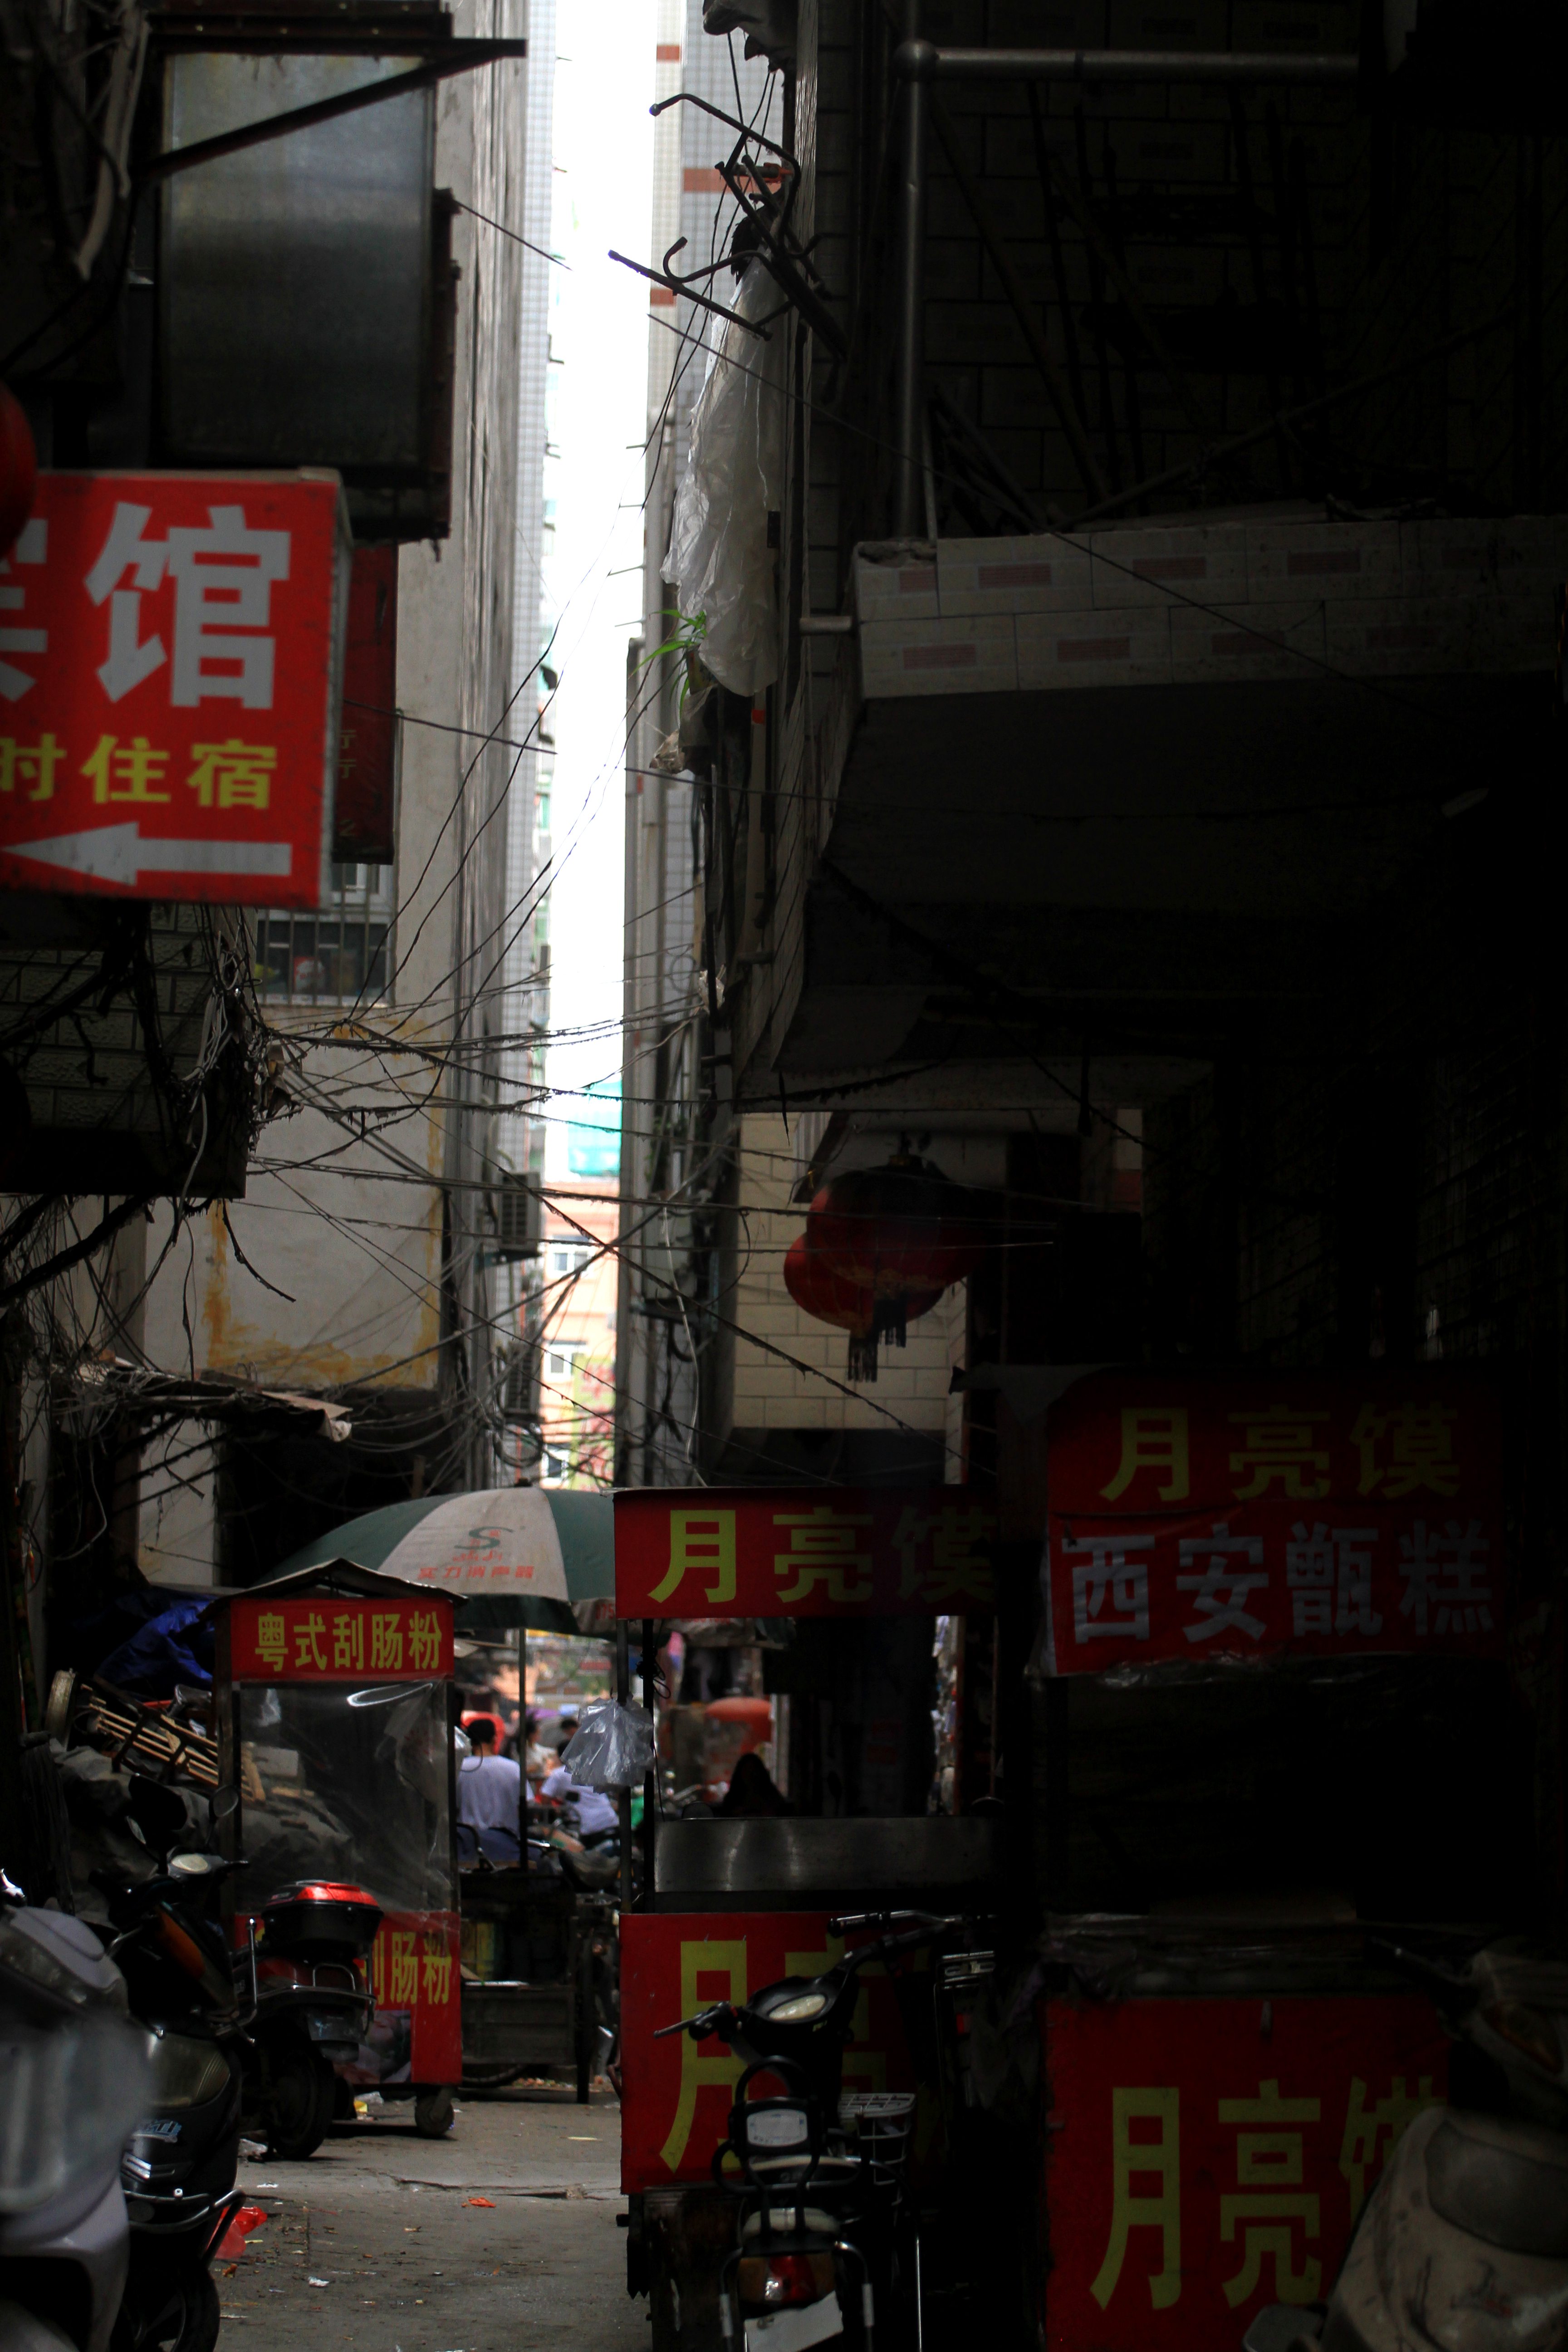 住着十几万郑漂的郑州最大城中村陈寨已全面启动拆迁改造,村内张贴的